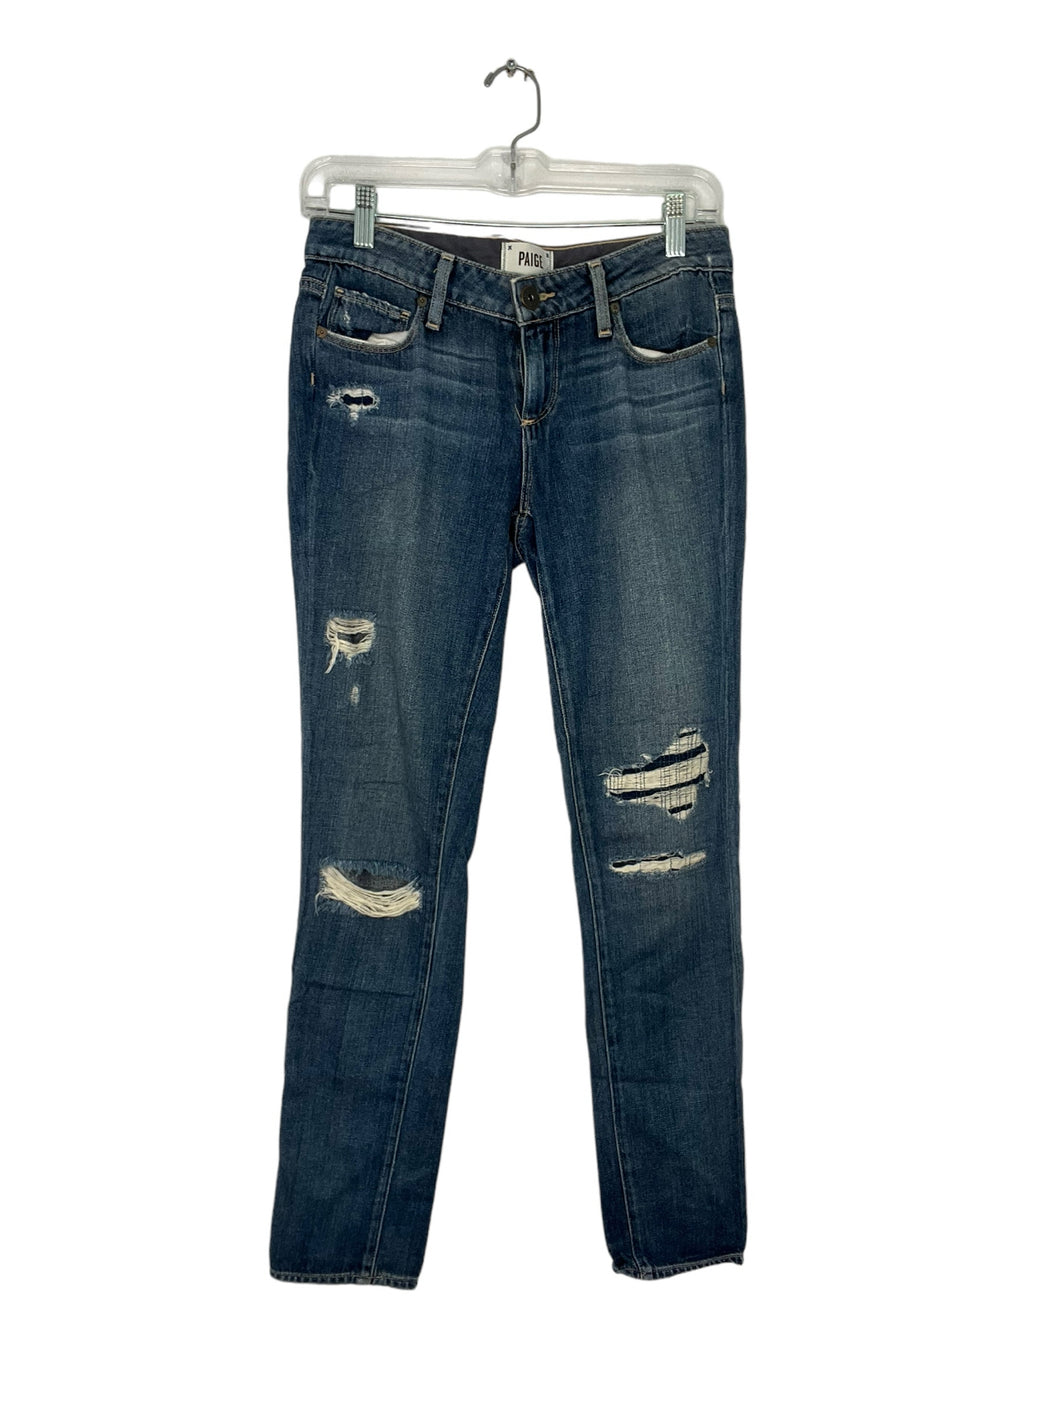 Paige Size 26 Denim Jeans- Ladies